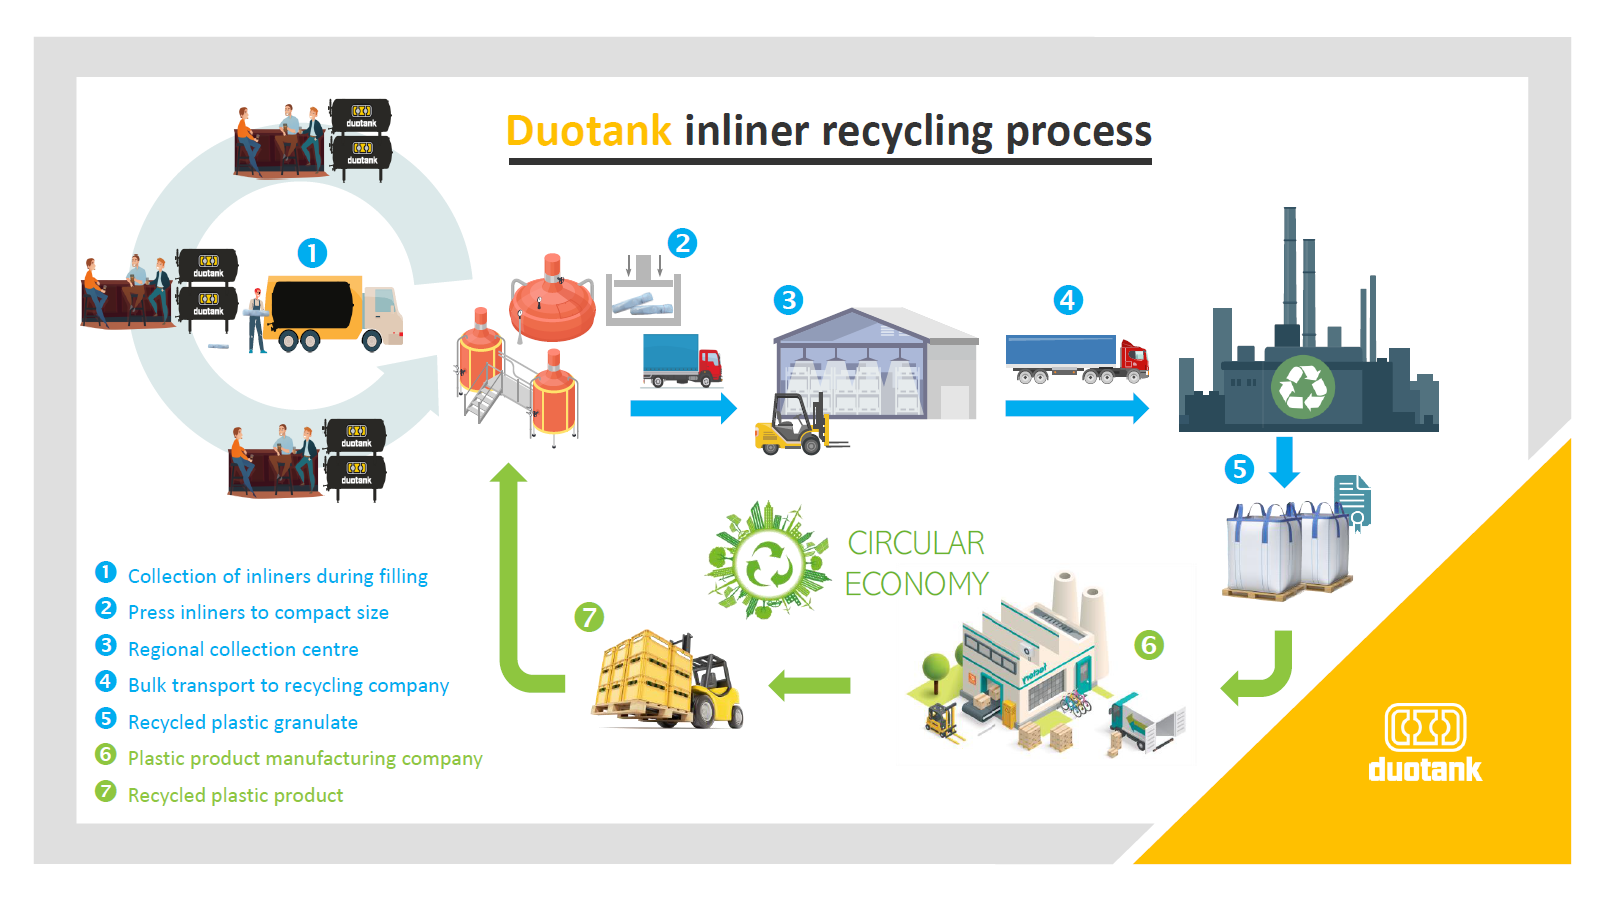 Duotank inliner recycling program - Duotank